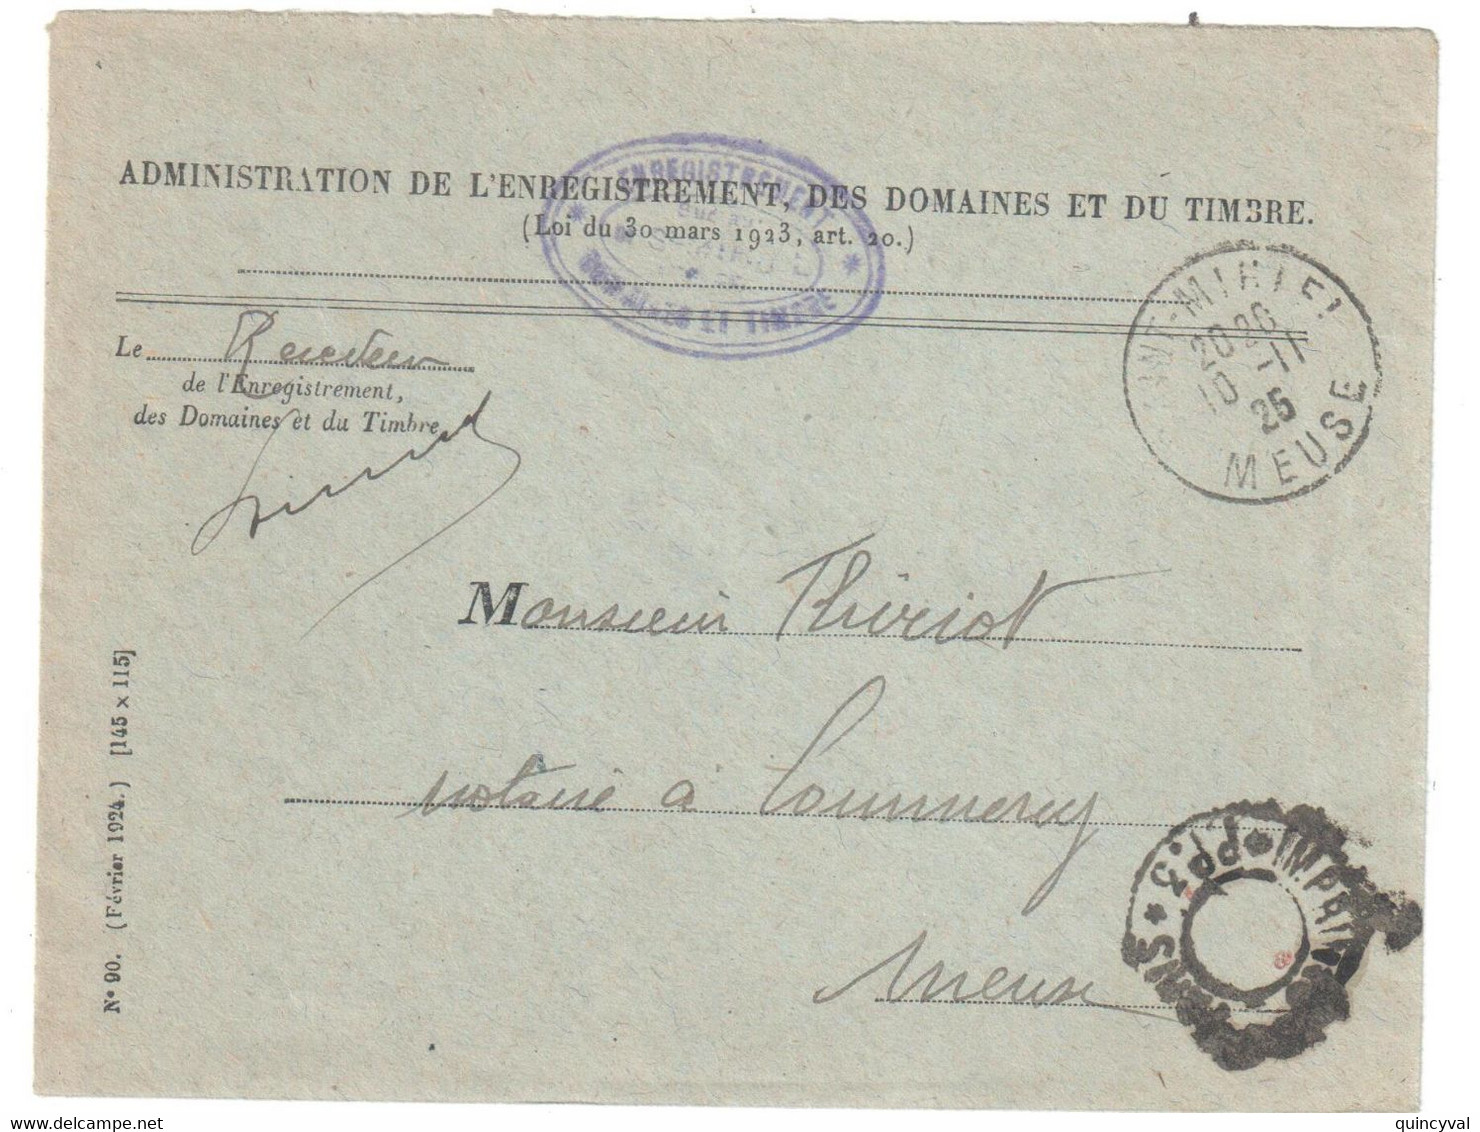 St MIHIEL Meuse Lettre Franchise Entête 1925 Enregistrement Domaines Timbres Dest Commercy Franchise Imprimés Paris PP3 - Lettres Civiles En Franchise